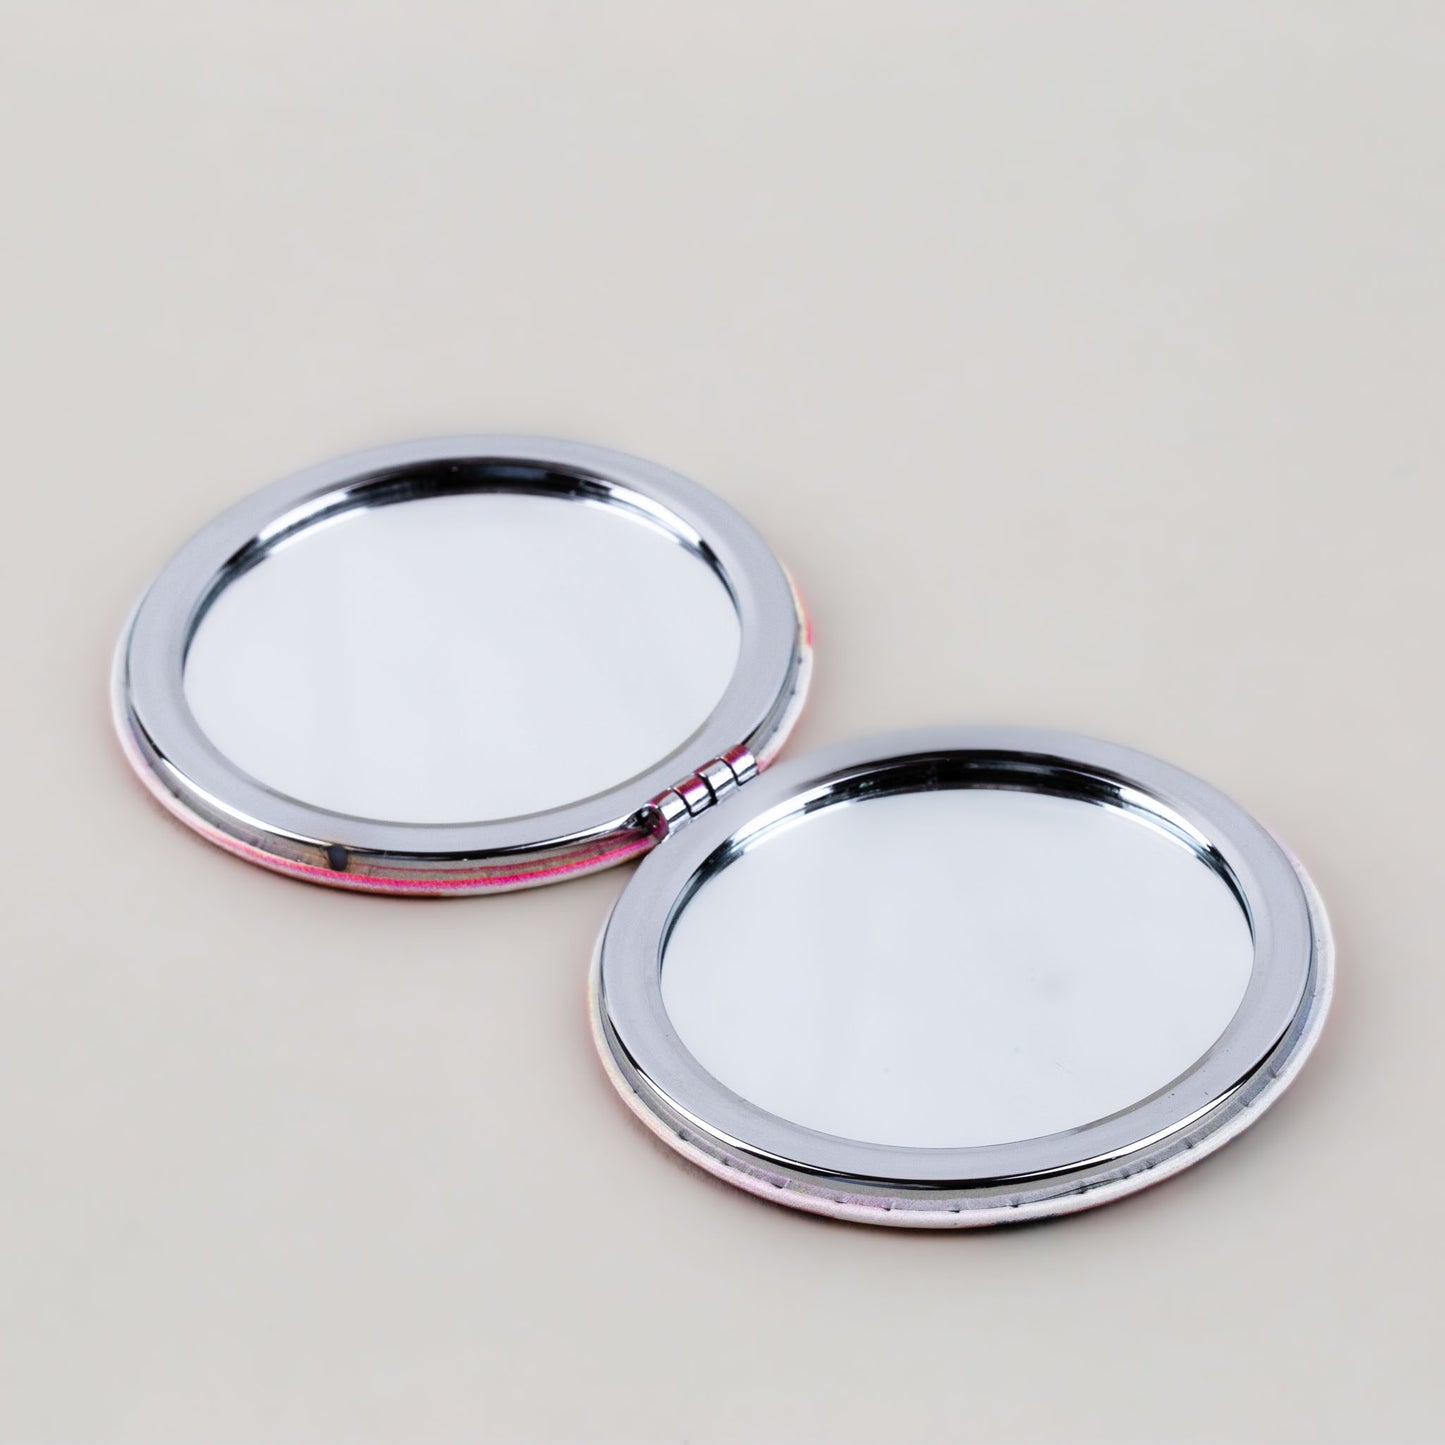 Oglindă de poșetă, formă rotundă cu 2 părți, model places - Mixed